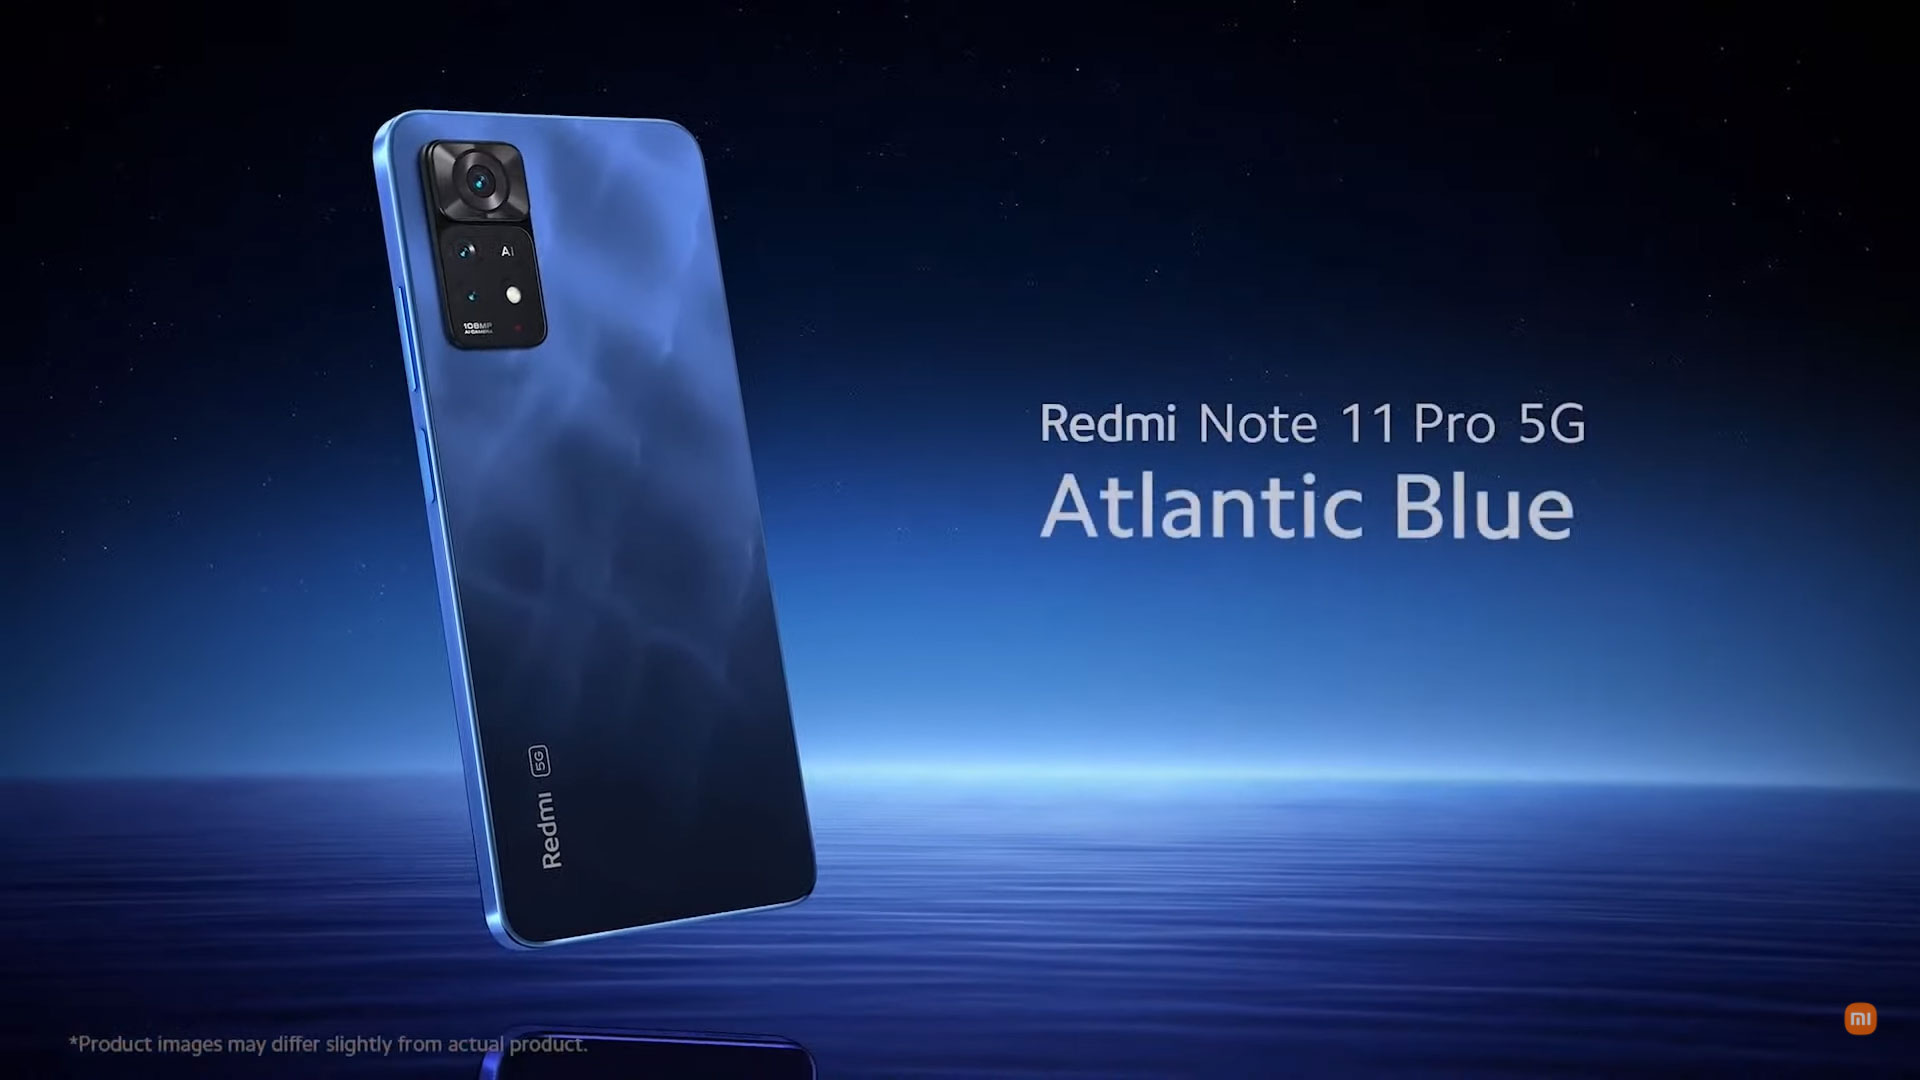 Redmi Note 11 launch